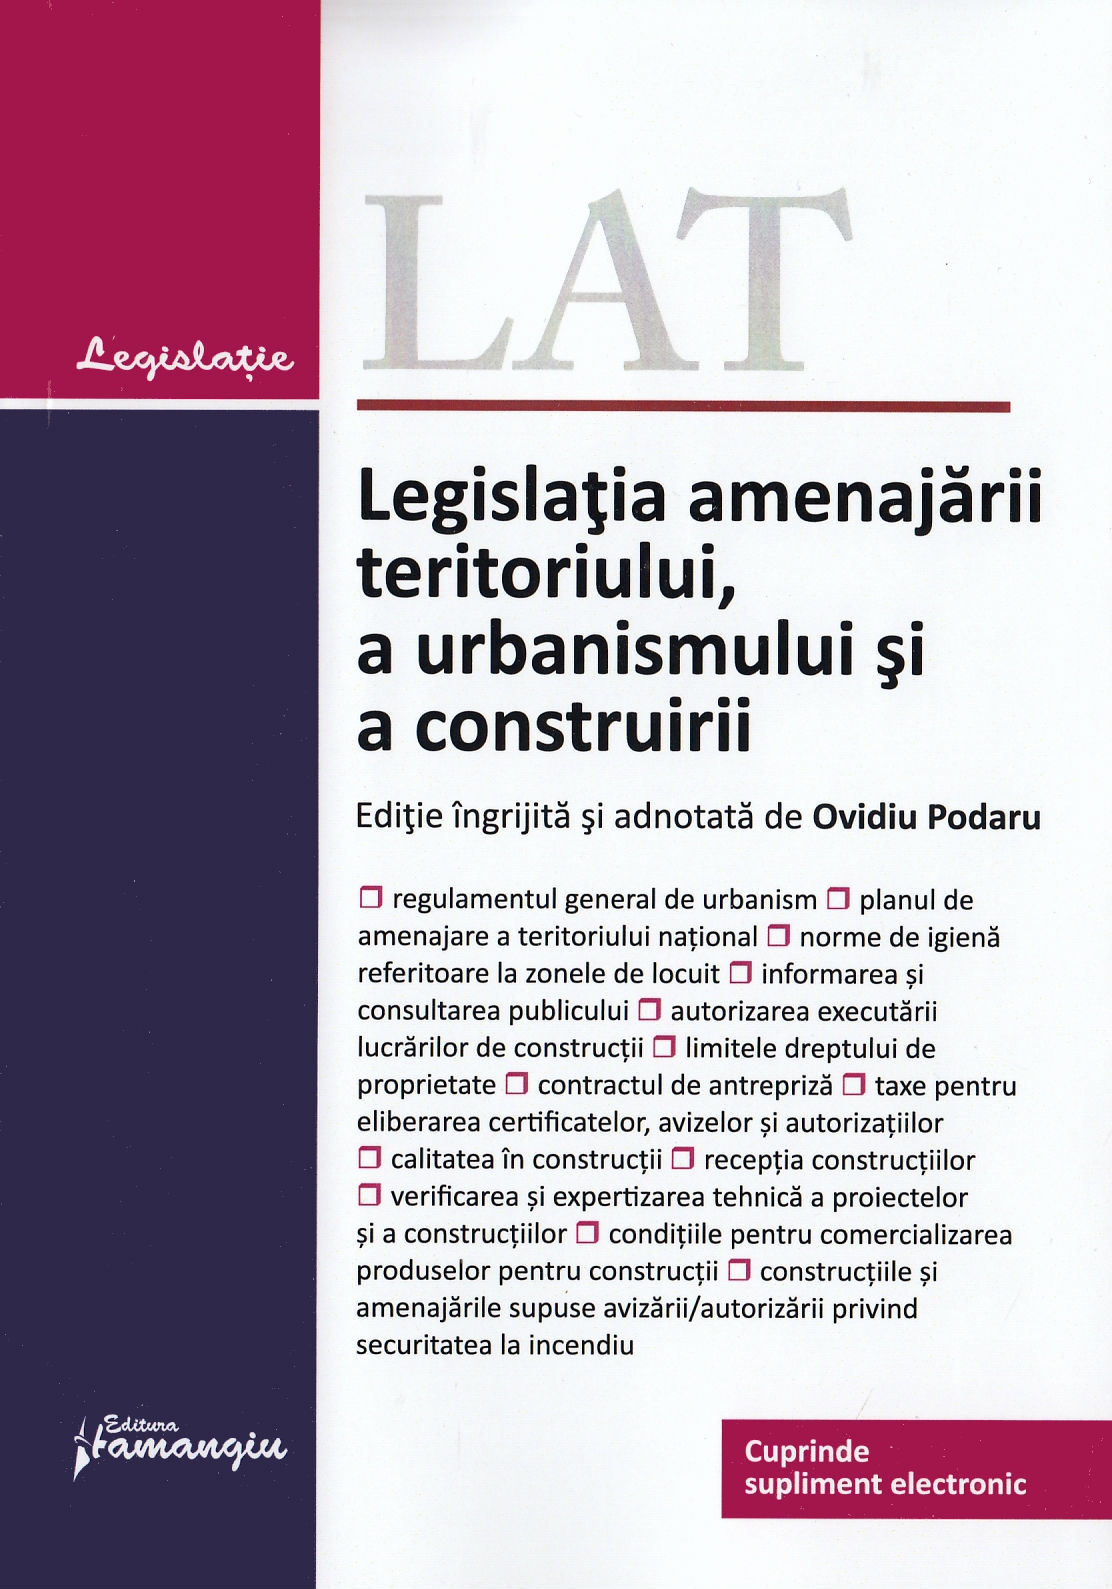 Legislatia amenajarii teritoriului, a urbanismului si a construirii Act. 06.09.2019